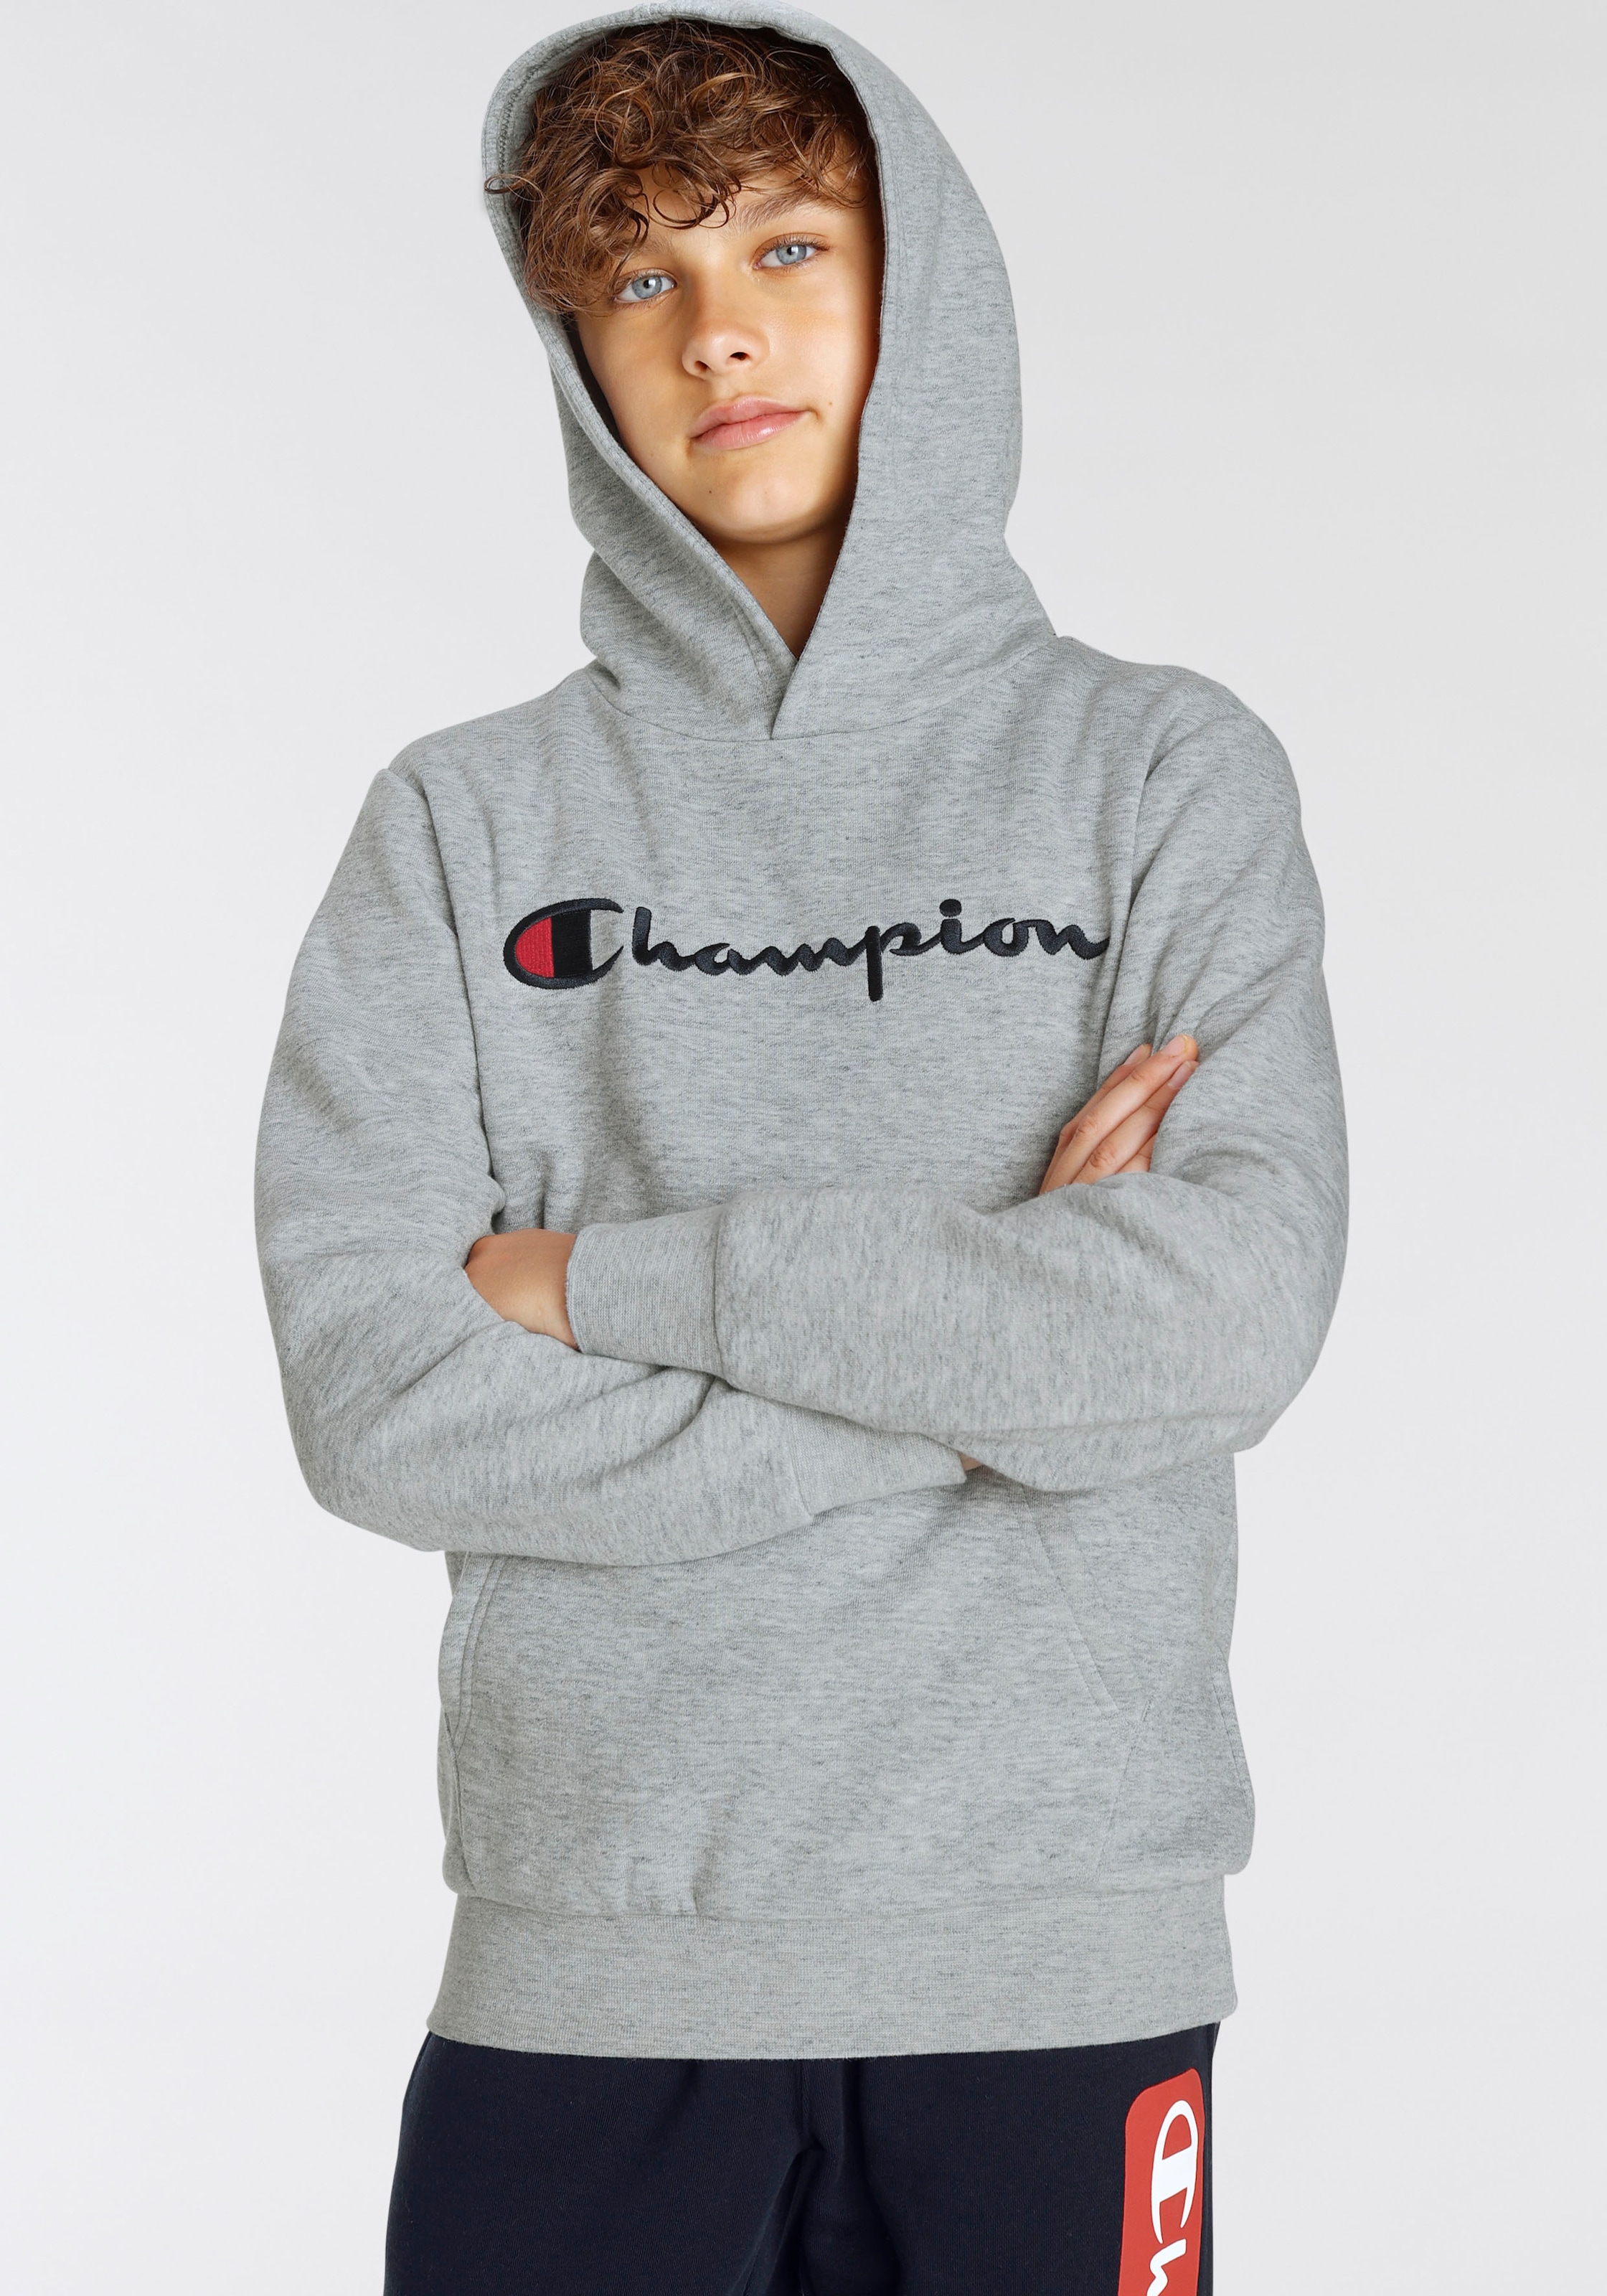 Logo kaufen large online »Classic Kinder« Champion für - Sweatshirt Hooded Sweatshirt